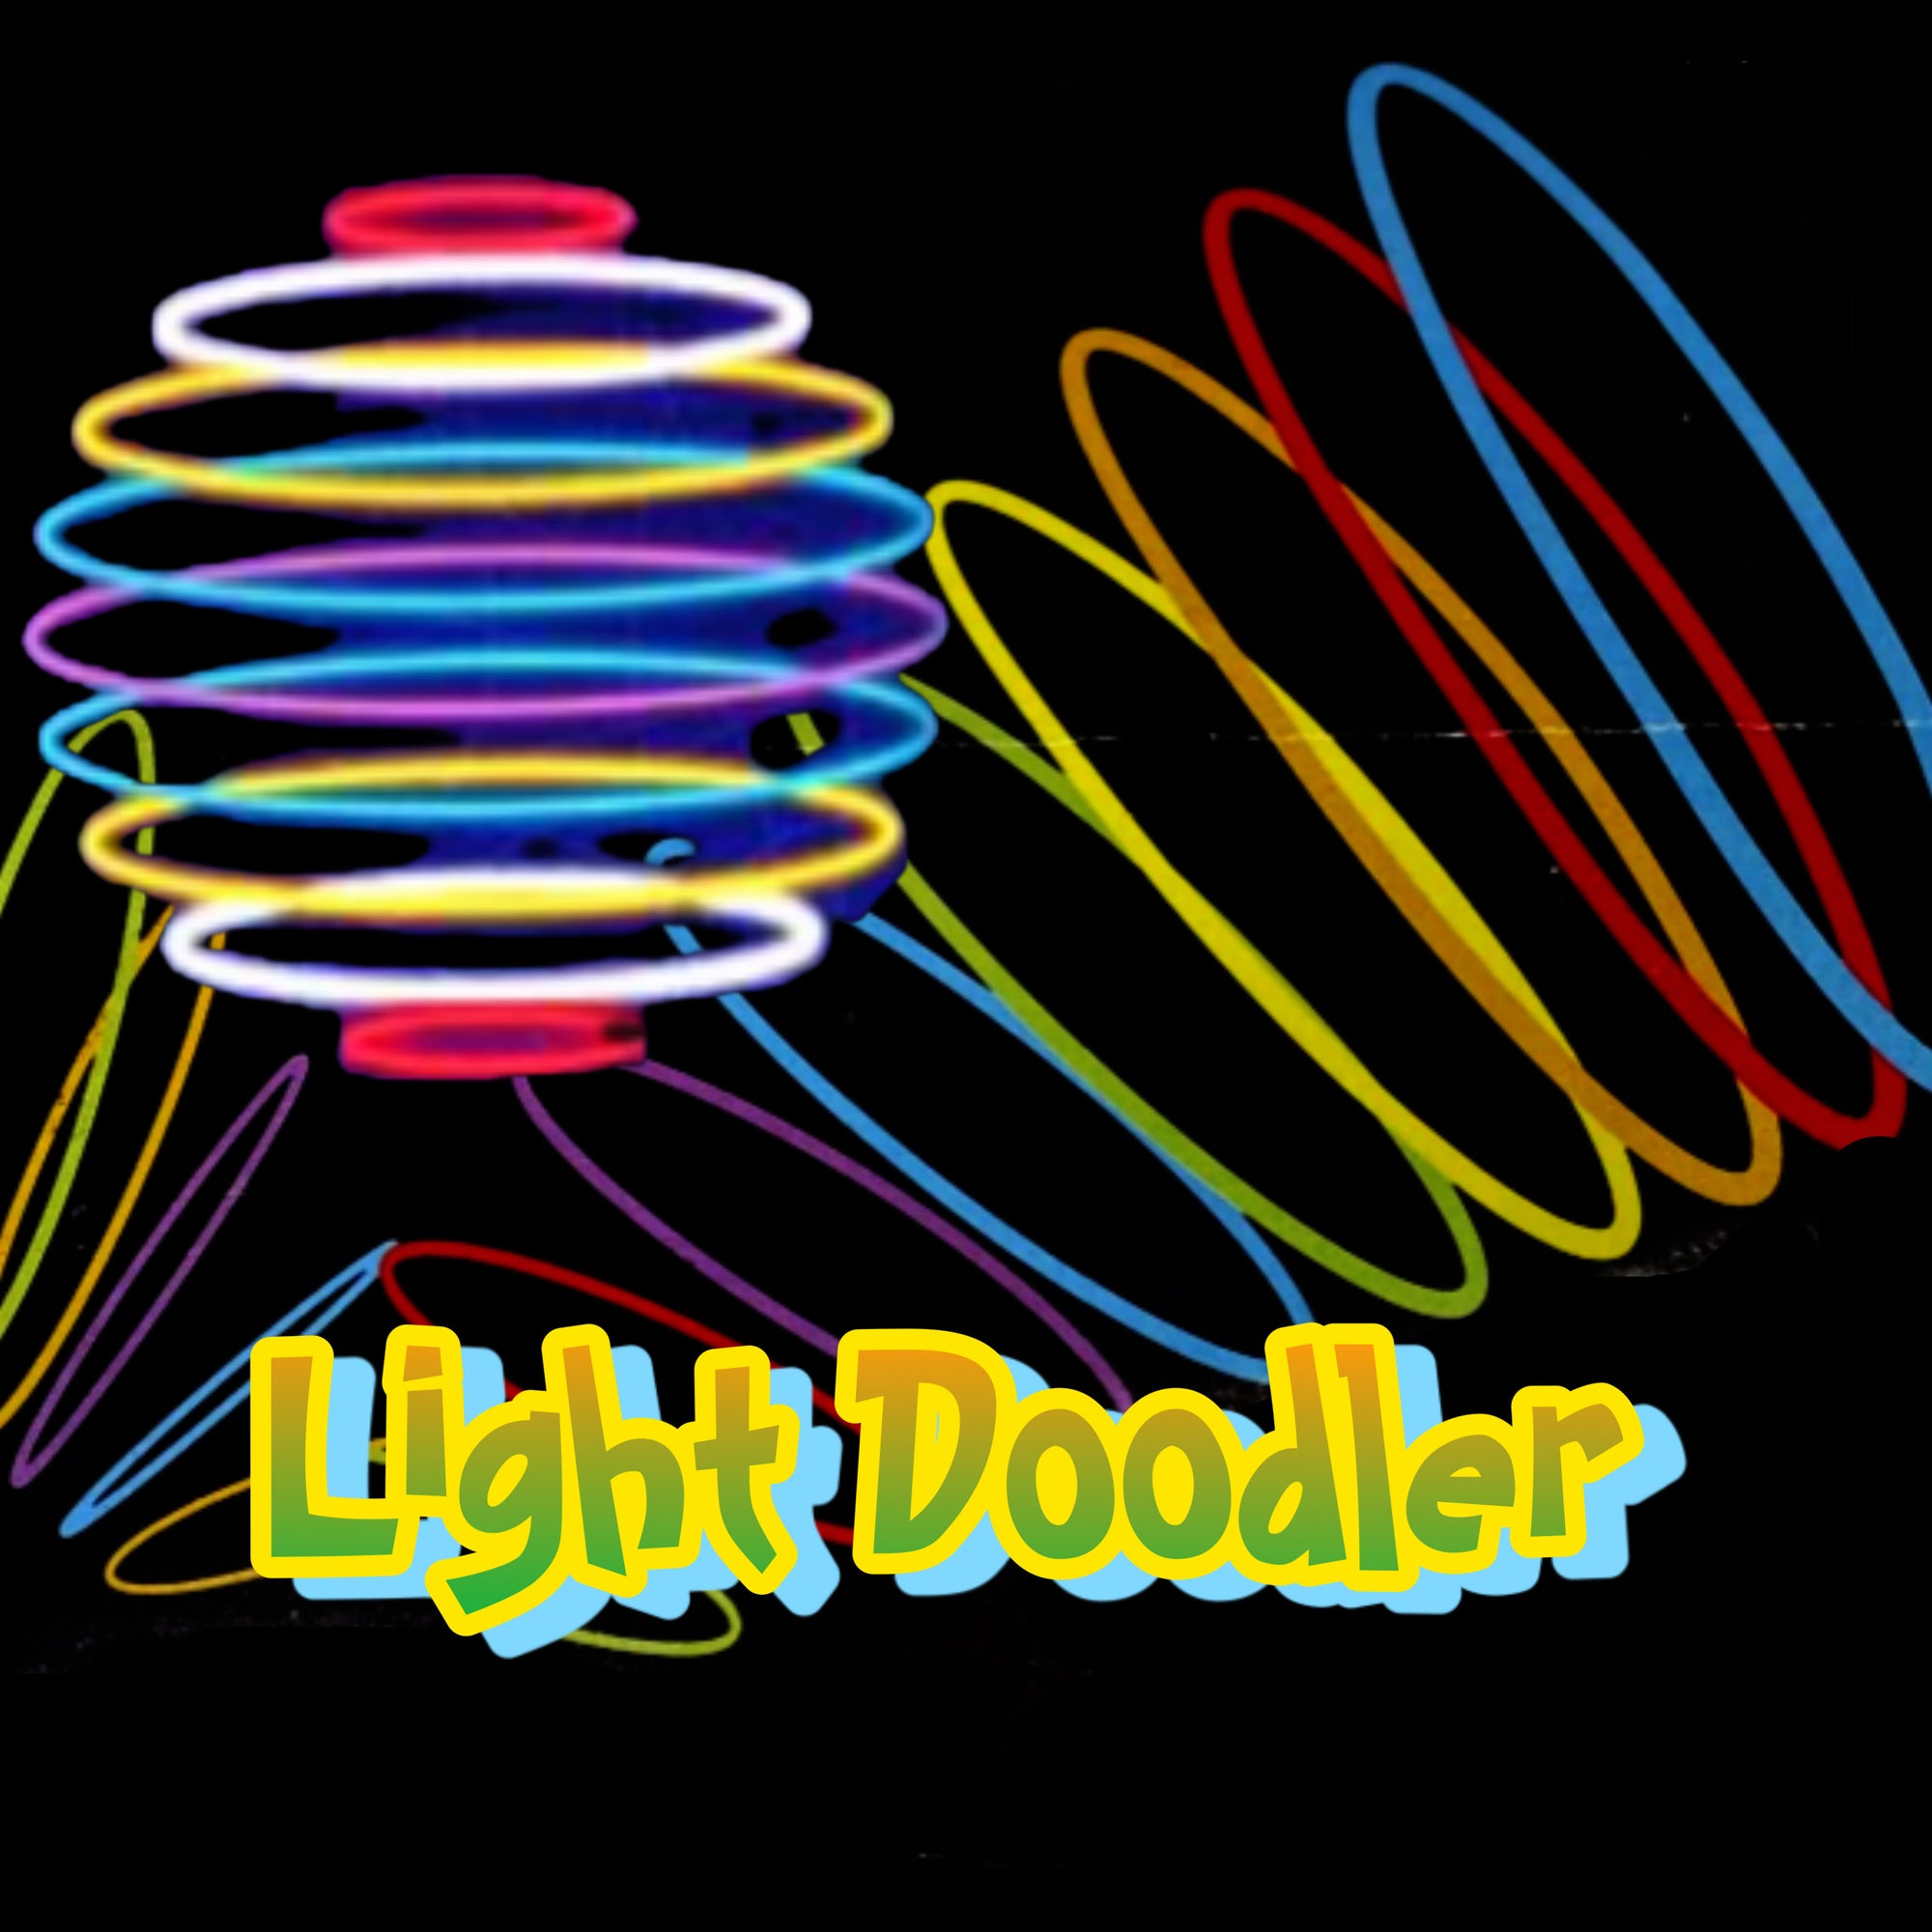 Can You Imagine - Light Doodler